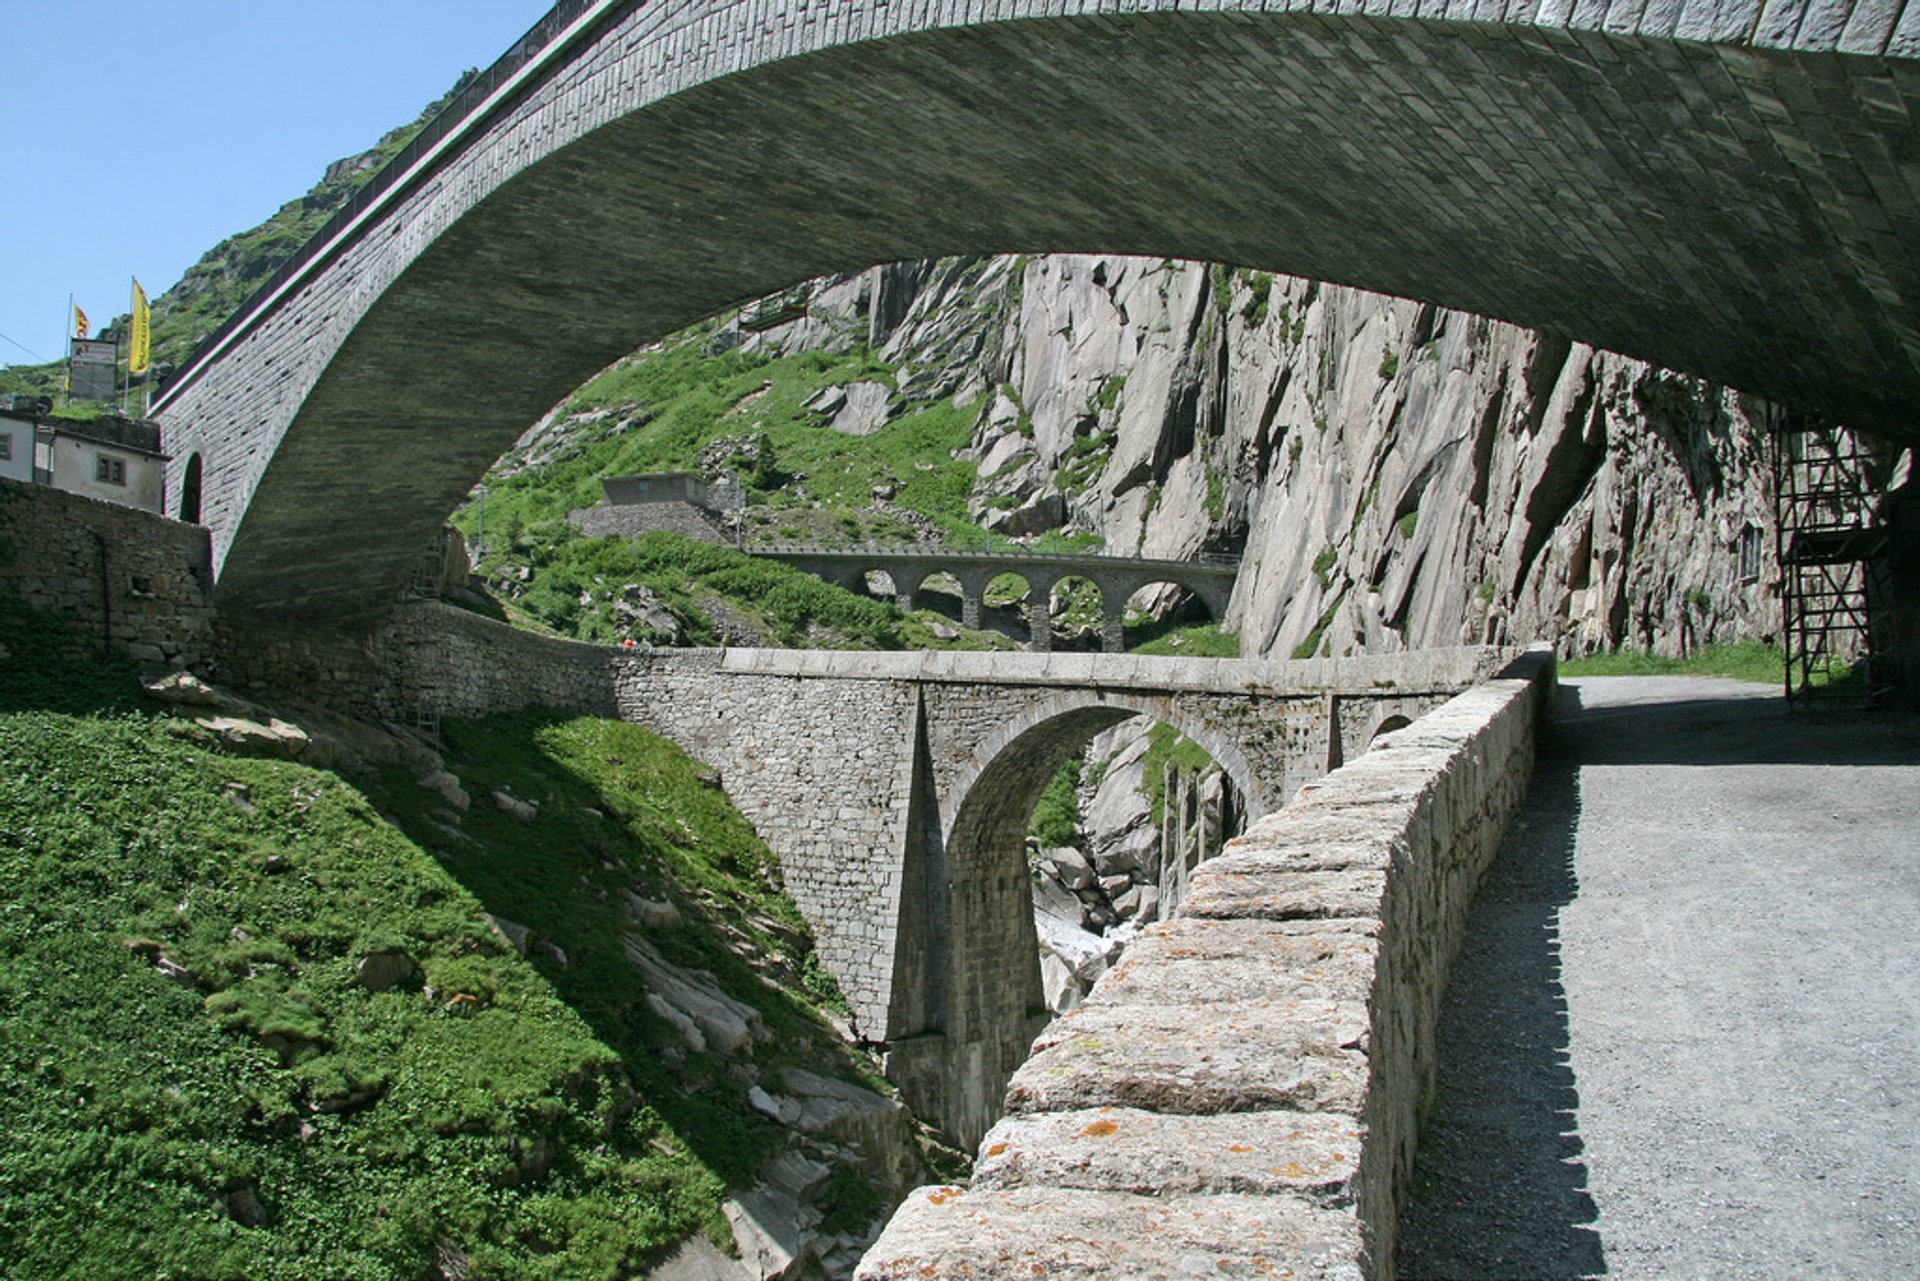 Teufelsbrücke ou Ponte do Diabo